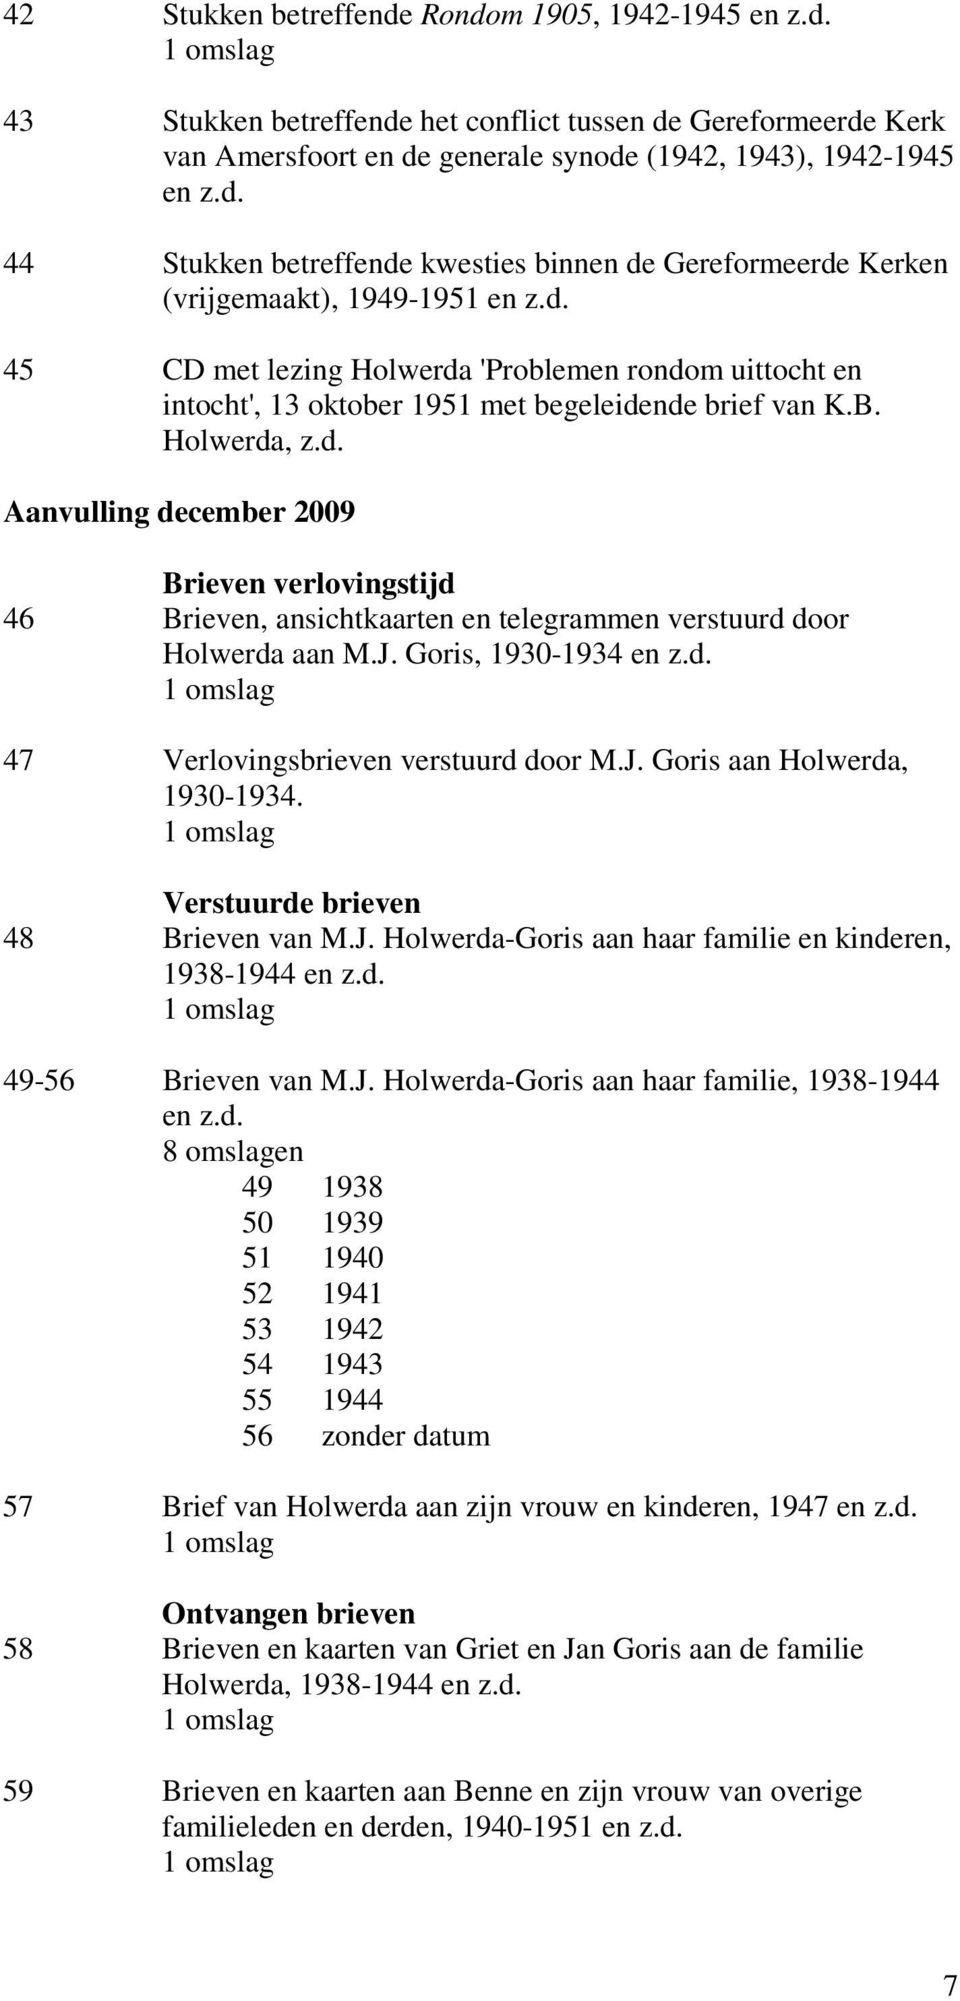 J. Goris, 1930-1934 en z.d. 47 Verlovingsbrieven verstuurd door M.J. Goris aan Holwerda, 1930-1934. Verstuurde brieven 48 Brieven van M.J. Holwerda-Goris aan haar familie en kinderen, 1938-1944 en z.